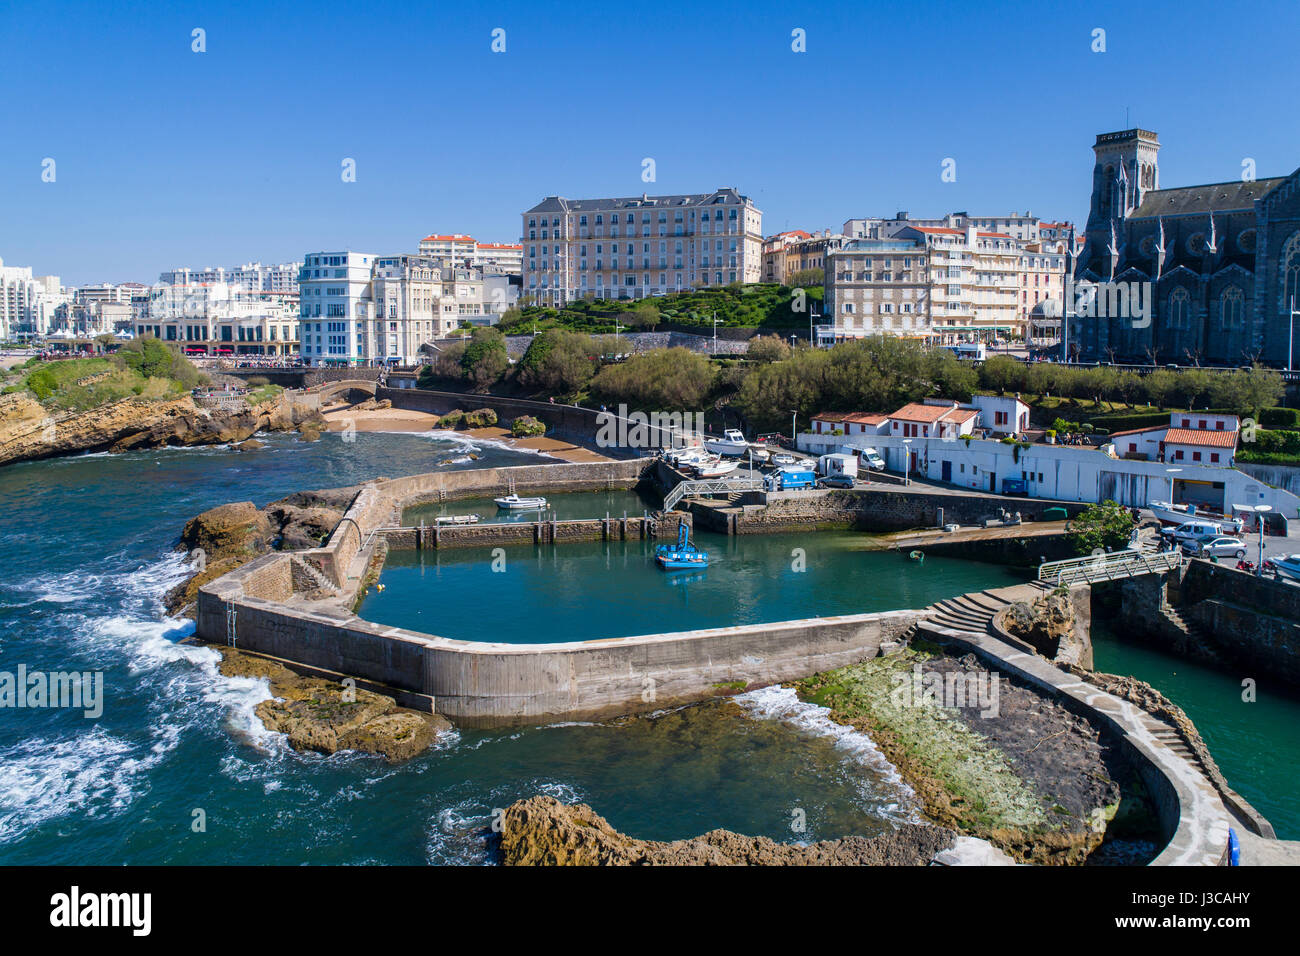 Biarritz est une ville sur le golfe de Gascogne, sur la côte atlantique dans le département de la région Aquitaine dans le Sud-Ouest de la France. Banque D'Images